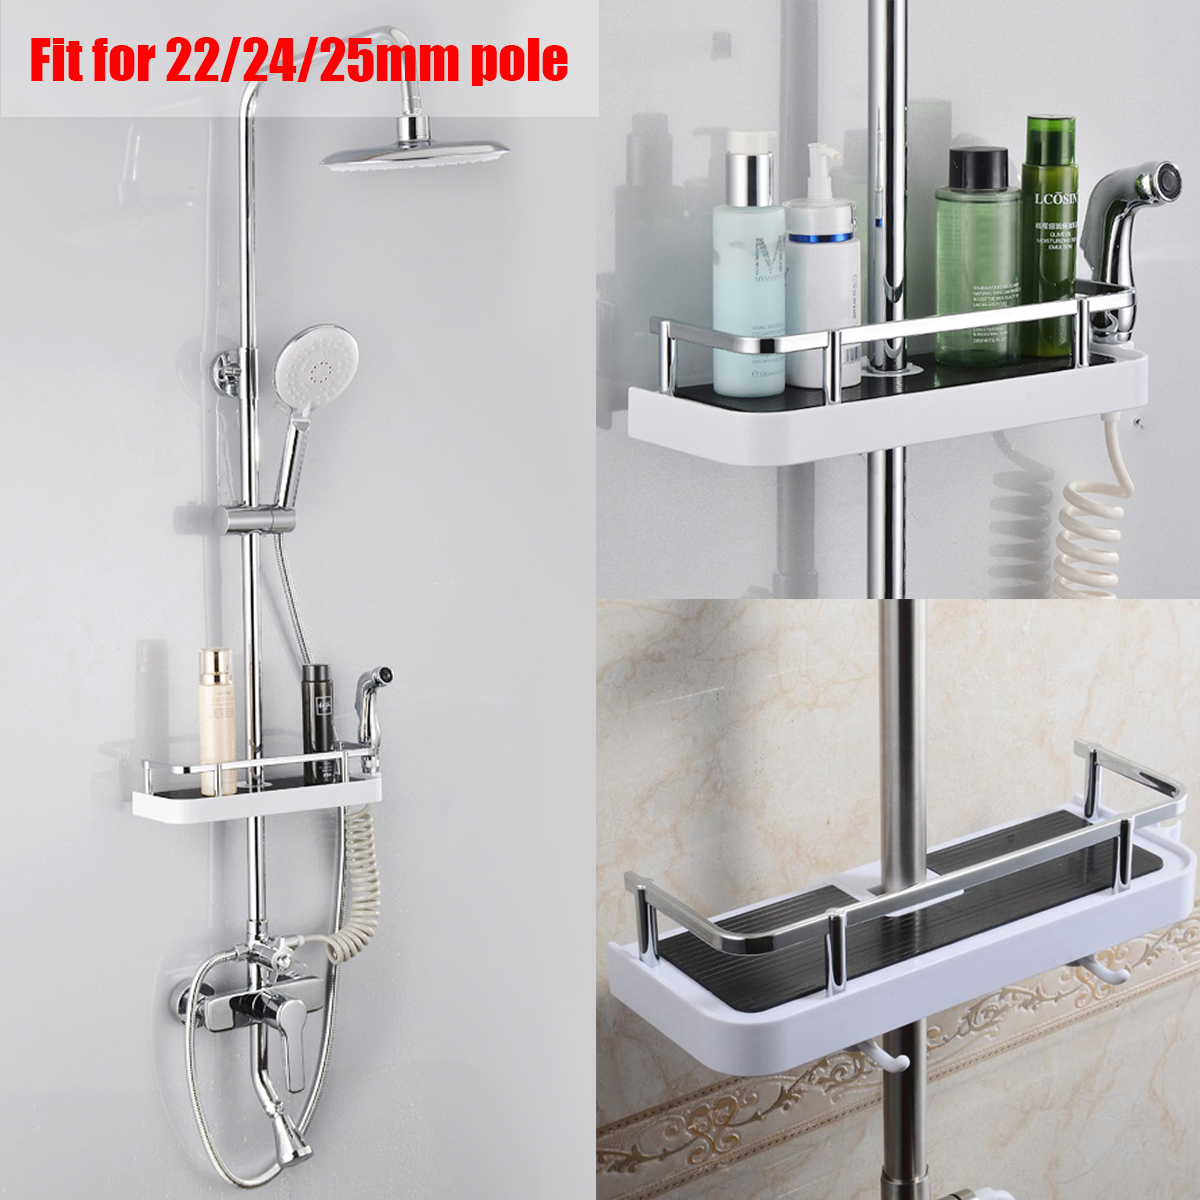 Bathroom-Pole-Shelf-Shower-Storage-Caddy-Rack-Organiser-Tray-Holder-Drain-Shelf-1165844-1